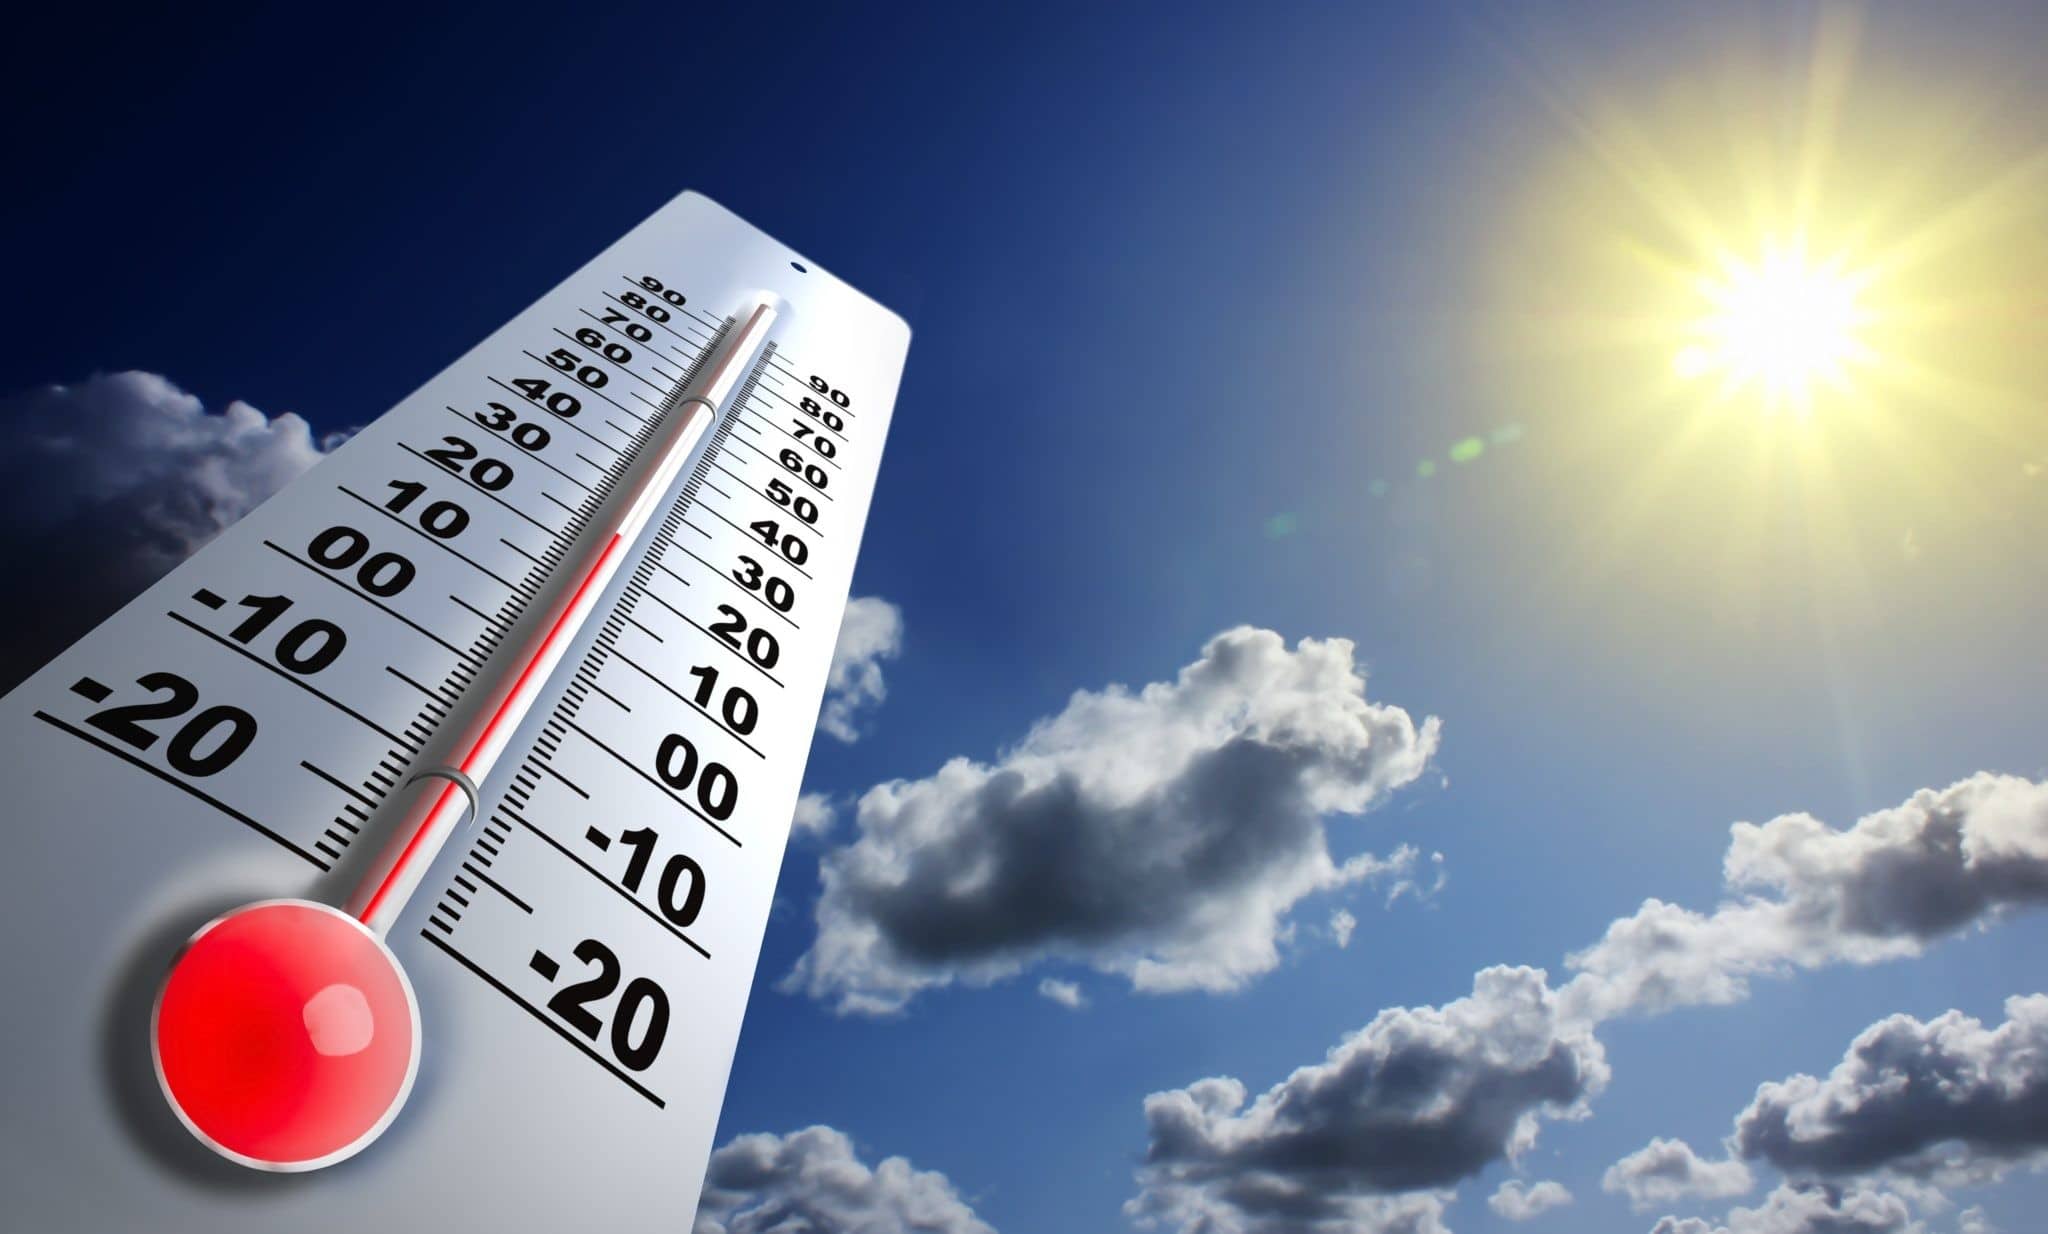 تعتبر مقاييس الحرارة من الأجهزة المستعملة في مراقبة أحوال الطقس.